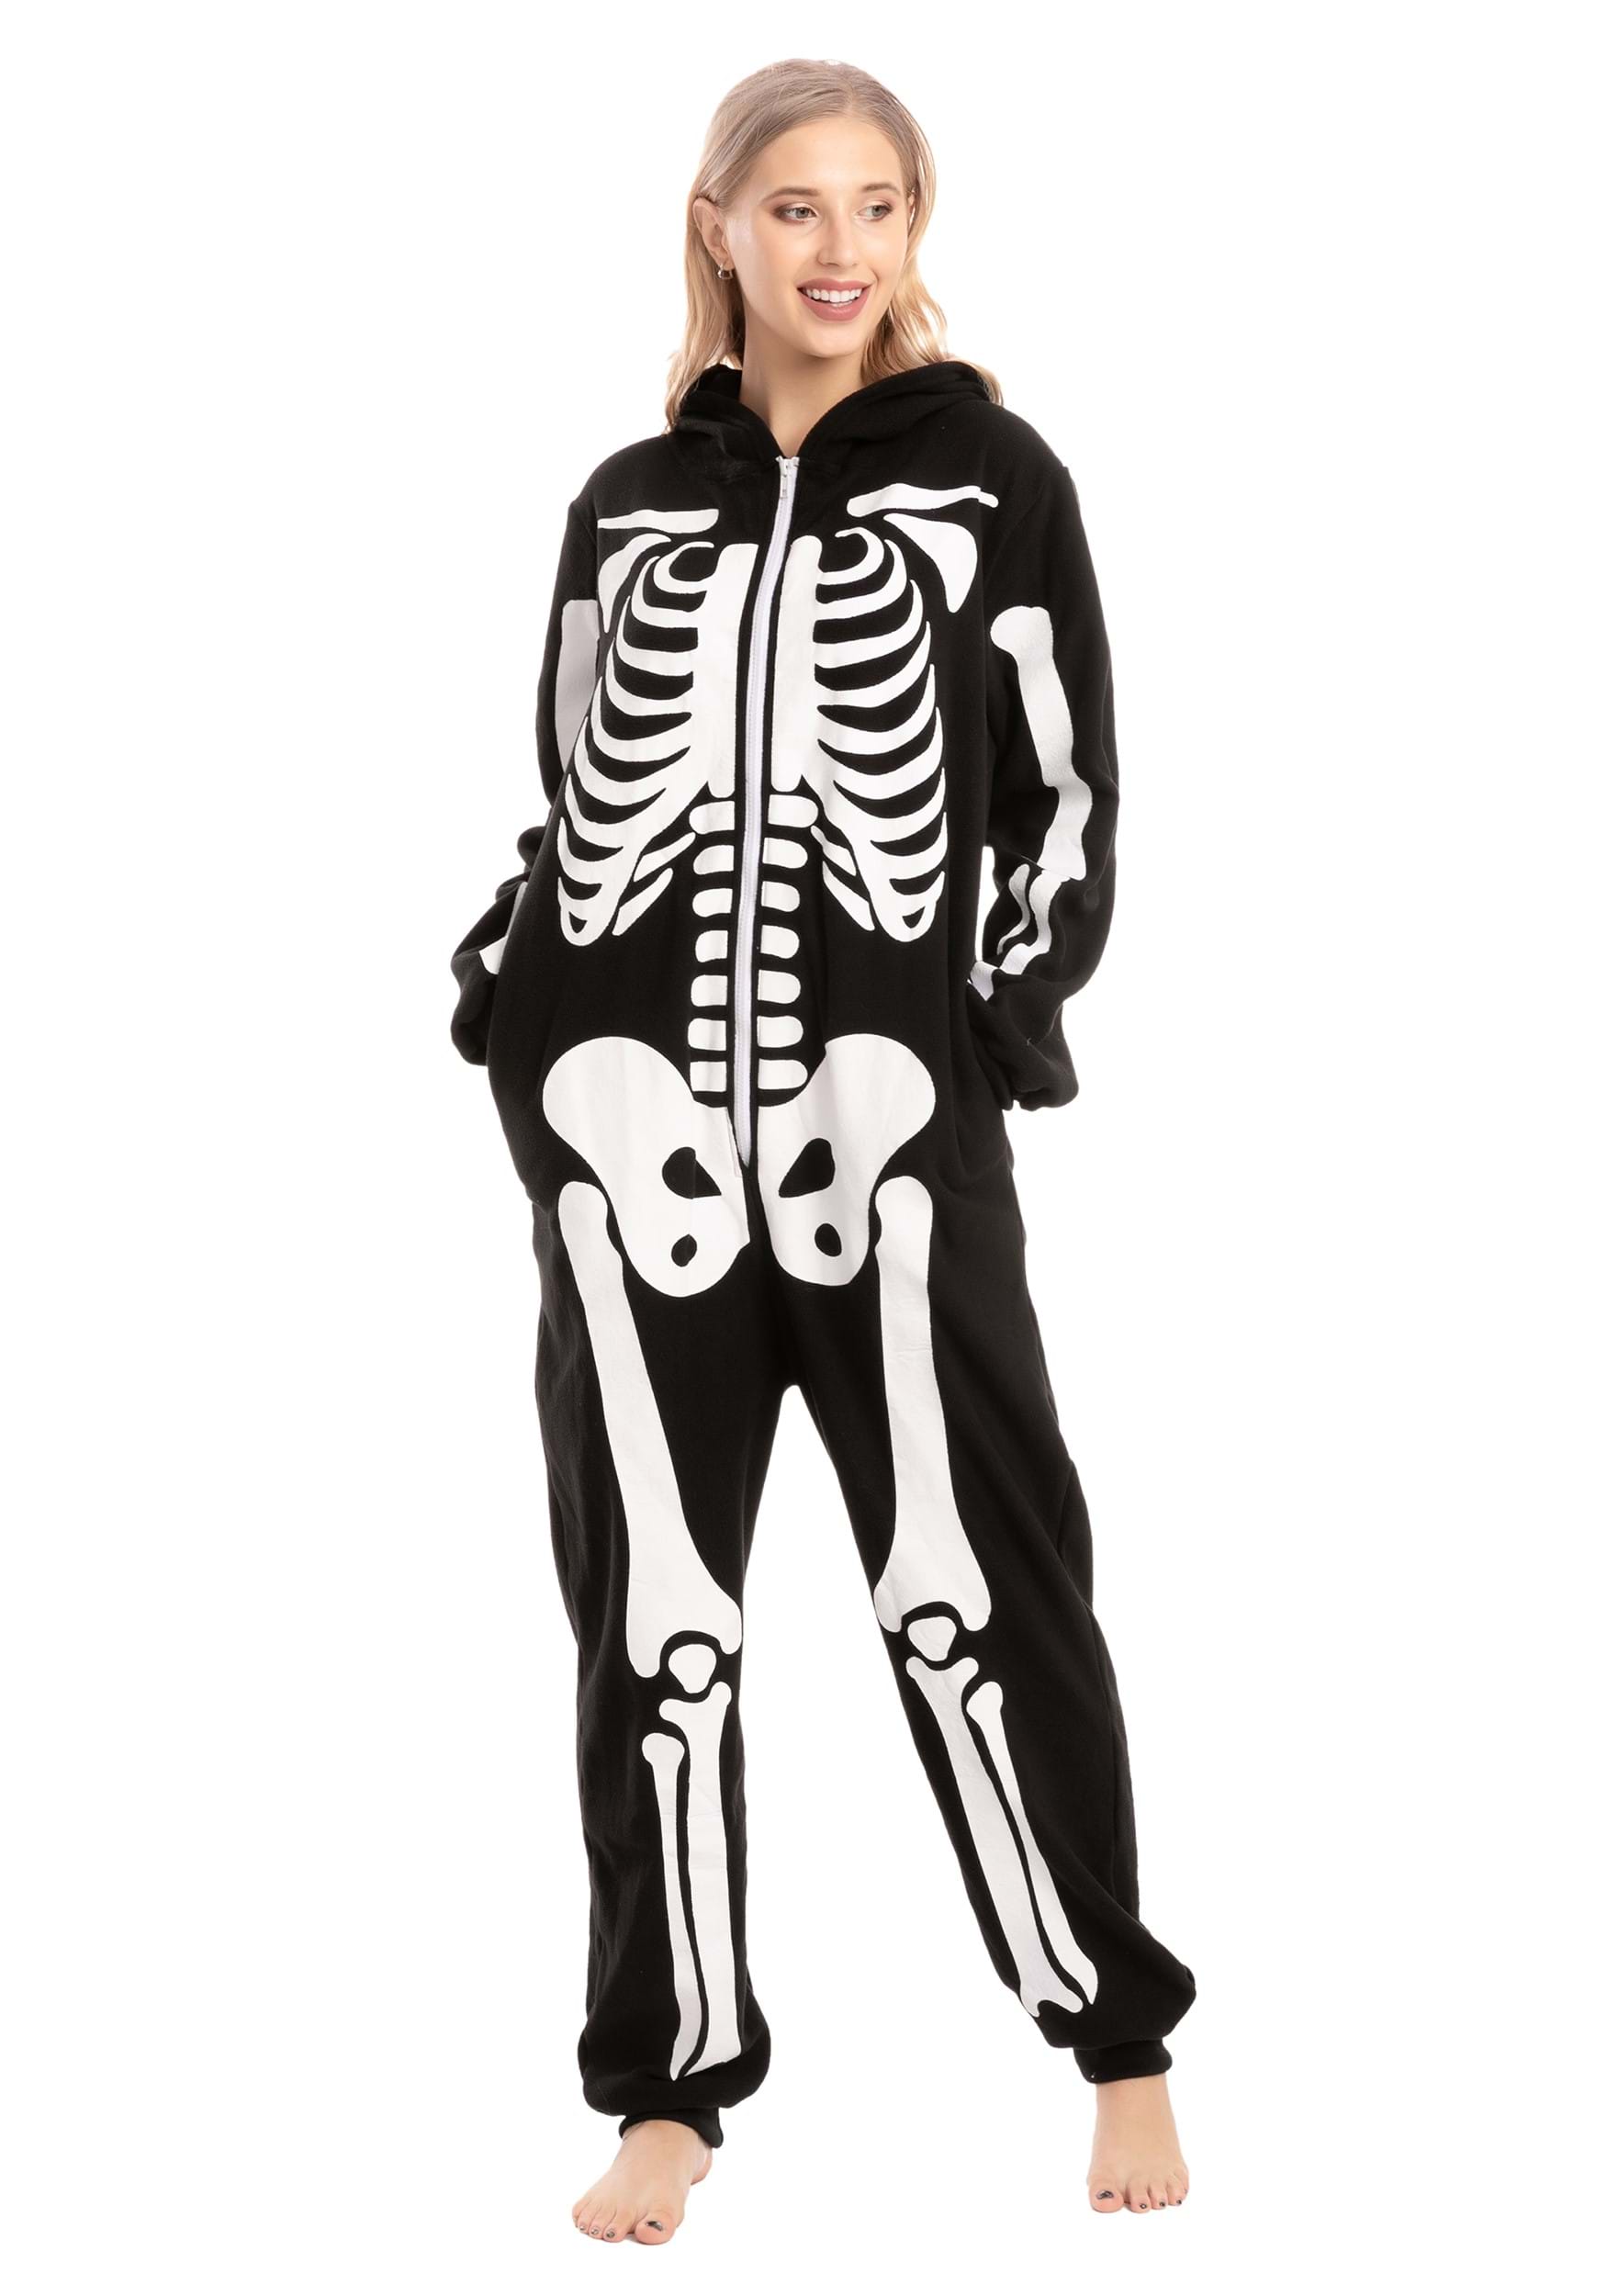 Hooded Skeleton Adult Onesies